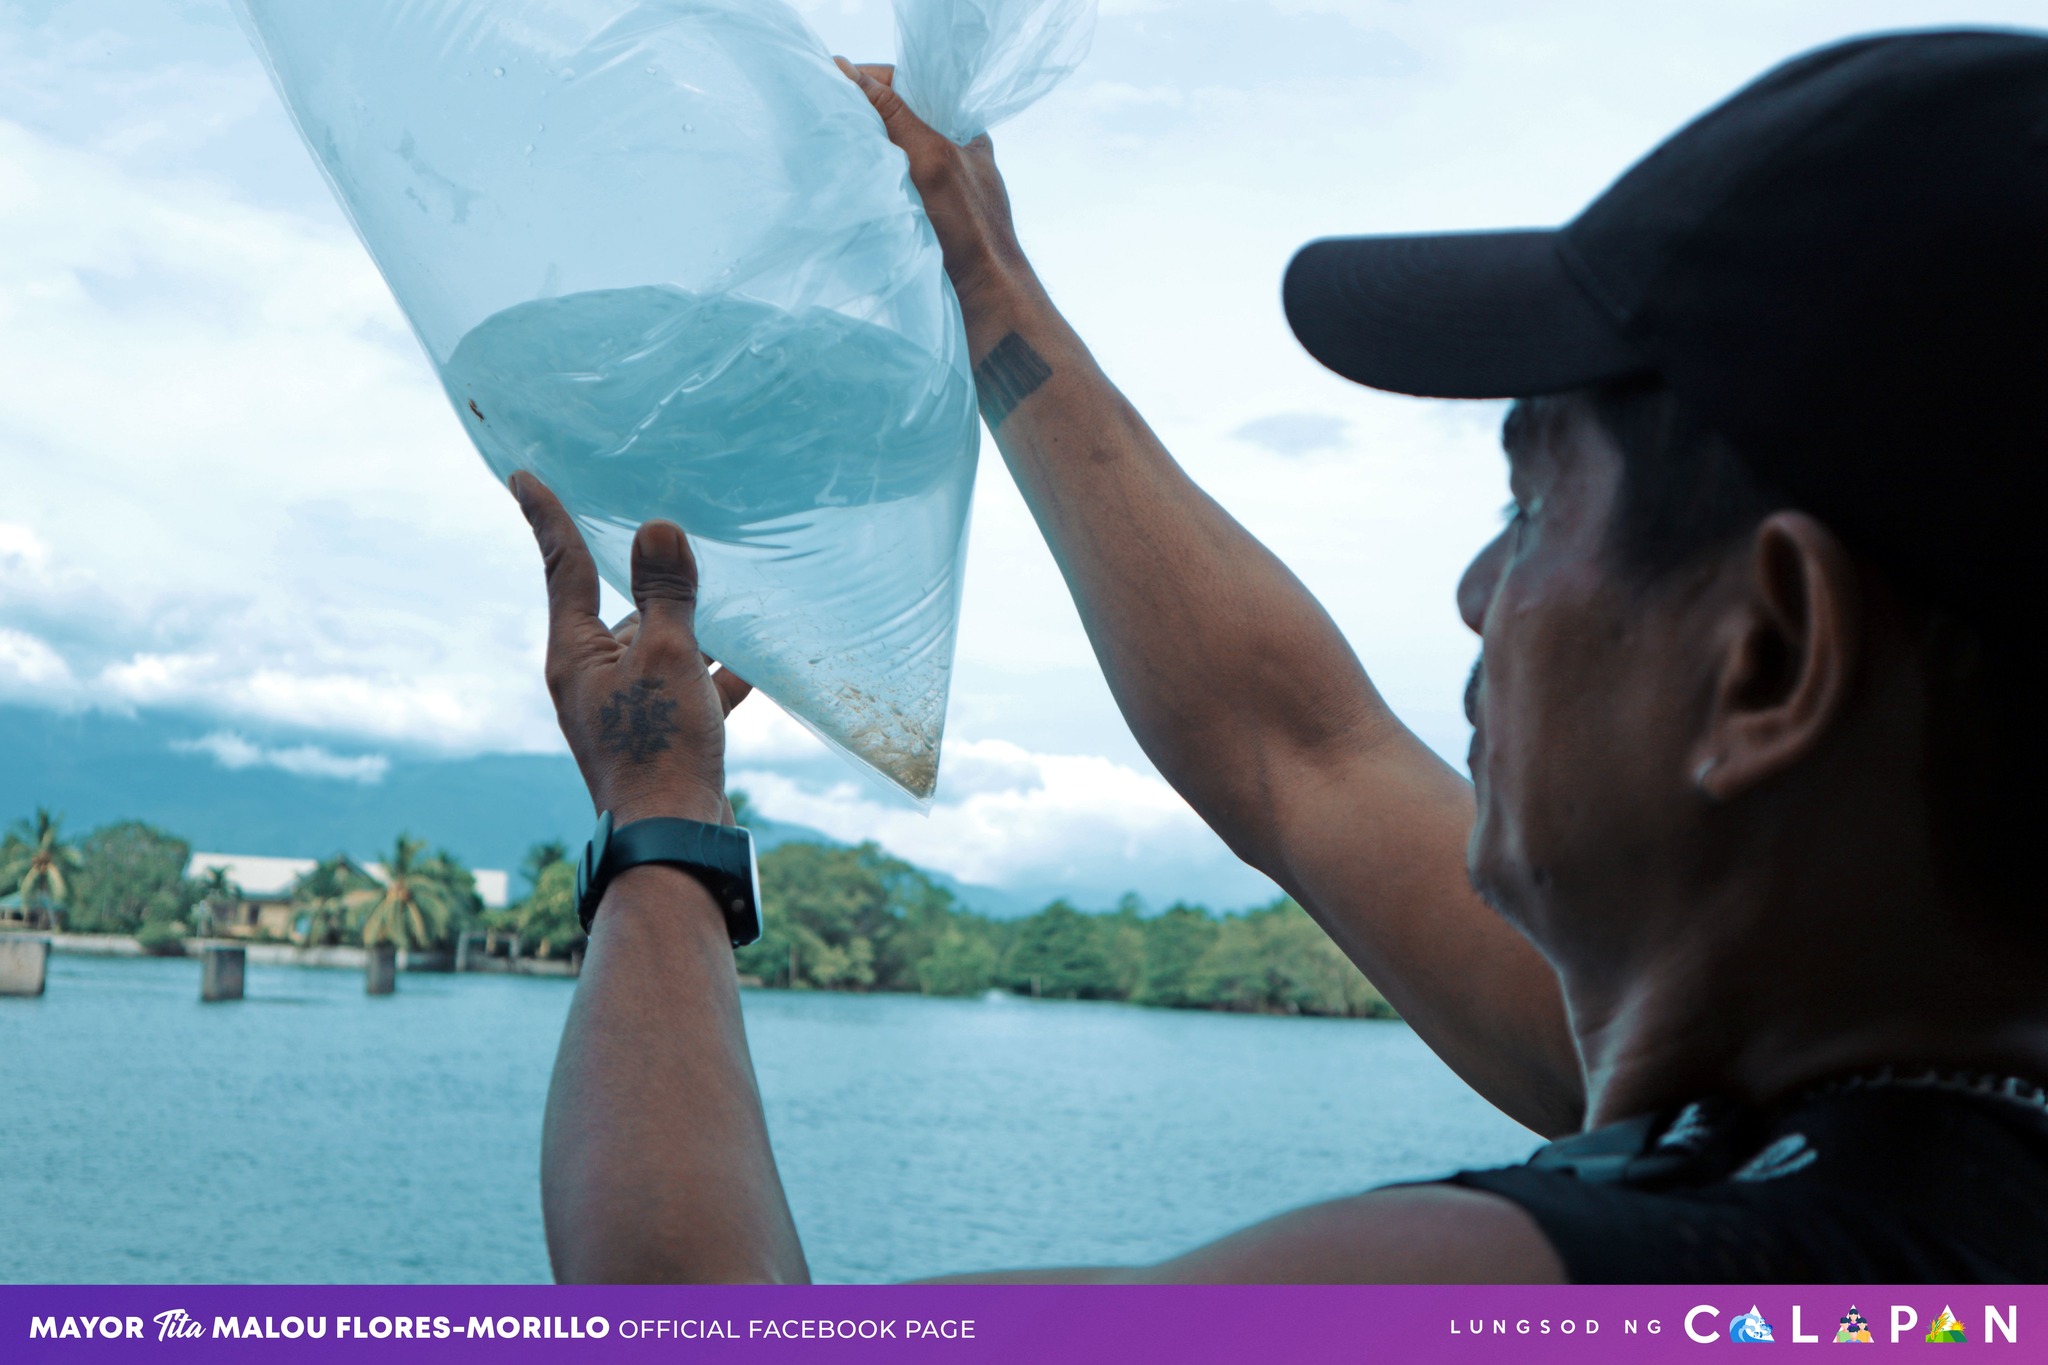 250,000 Bangus fingerlings, handog sa mga fish operators